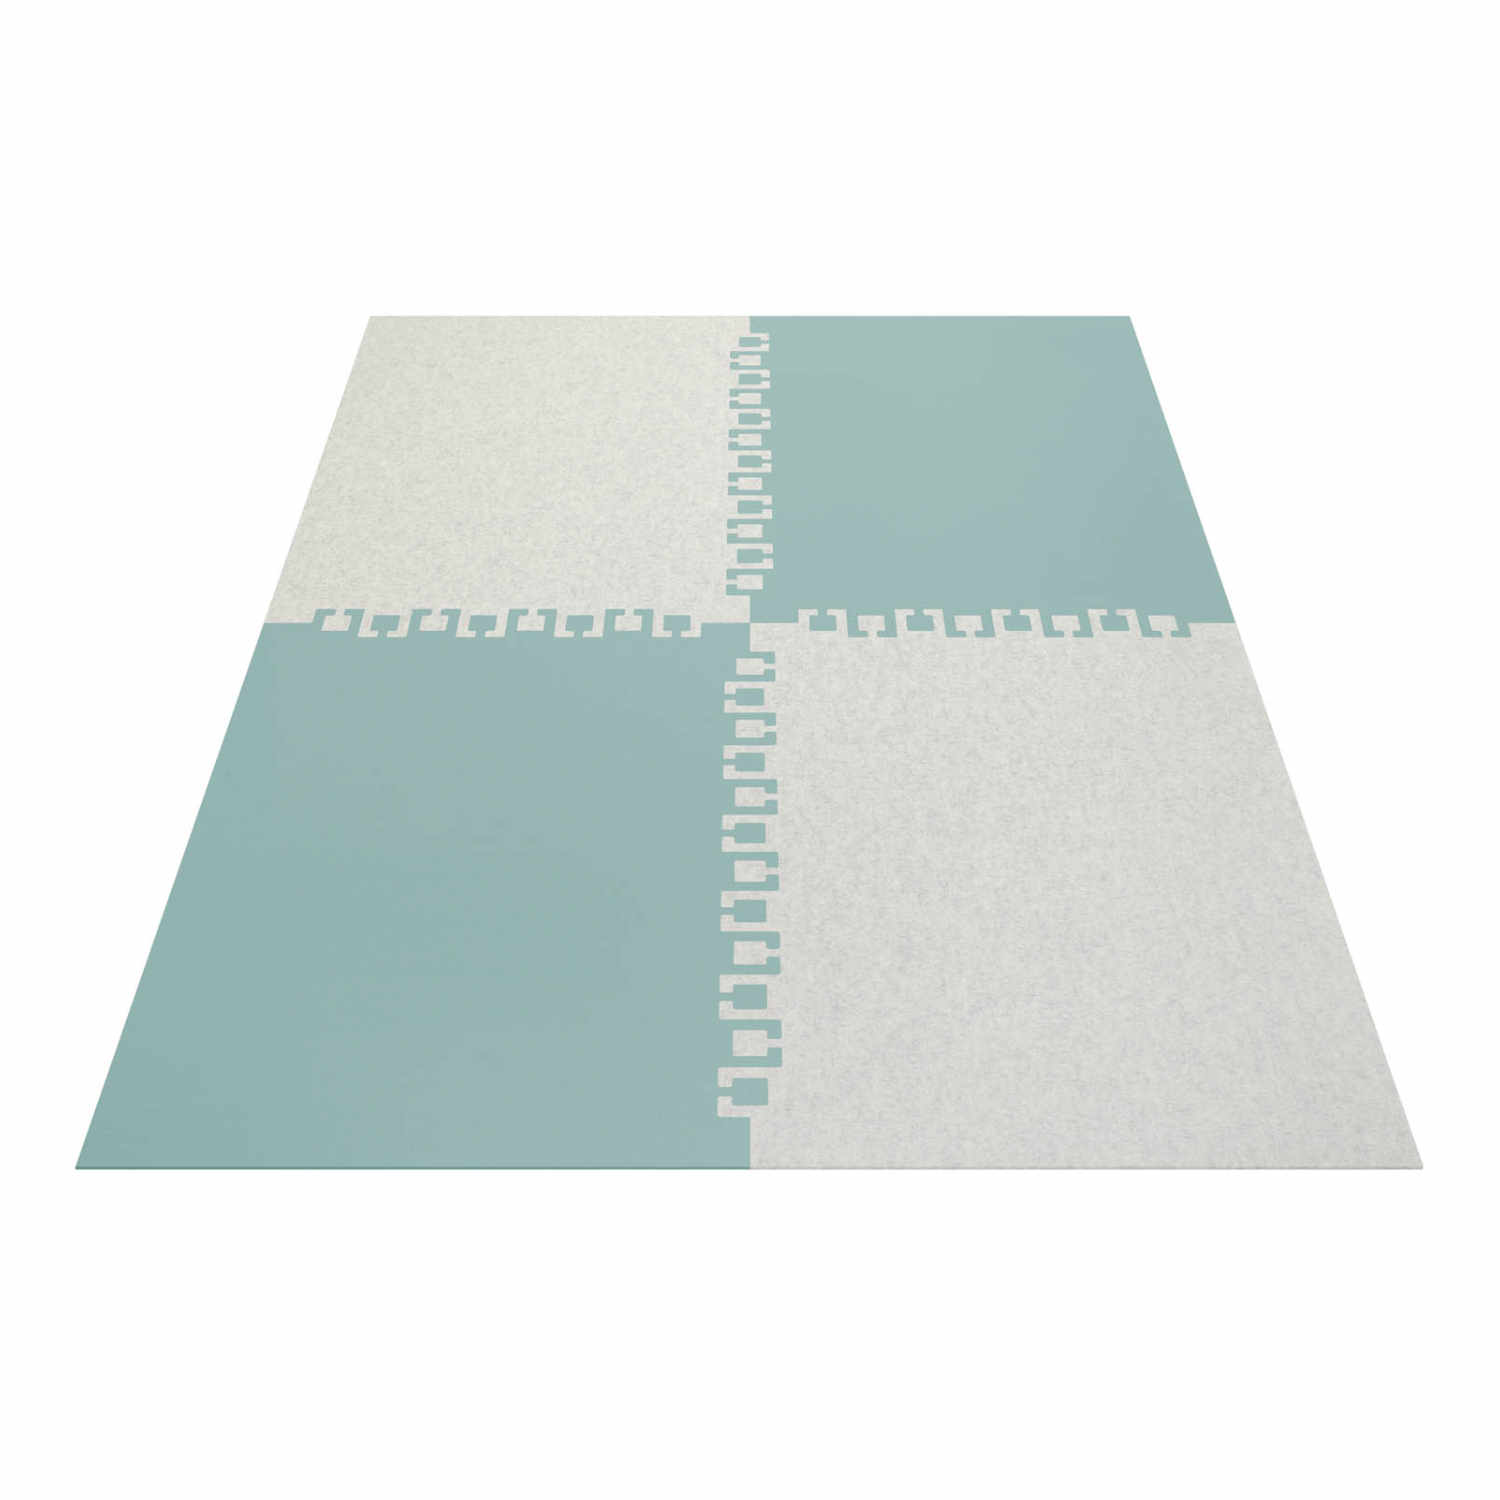 Twice rechteckig 4-teilig Teppich, Farbe taubengrau, Farbe 2 mohnrot 55, Grösse 140 x 200 cm von HEY-SIGN